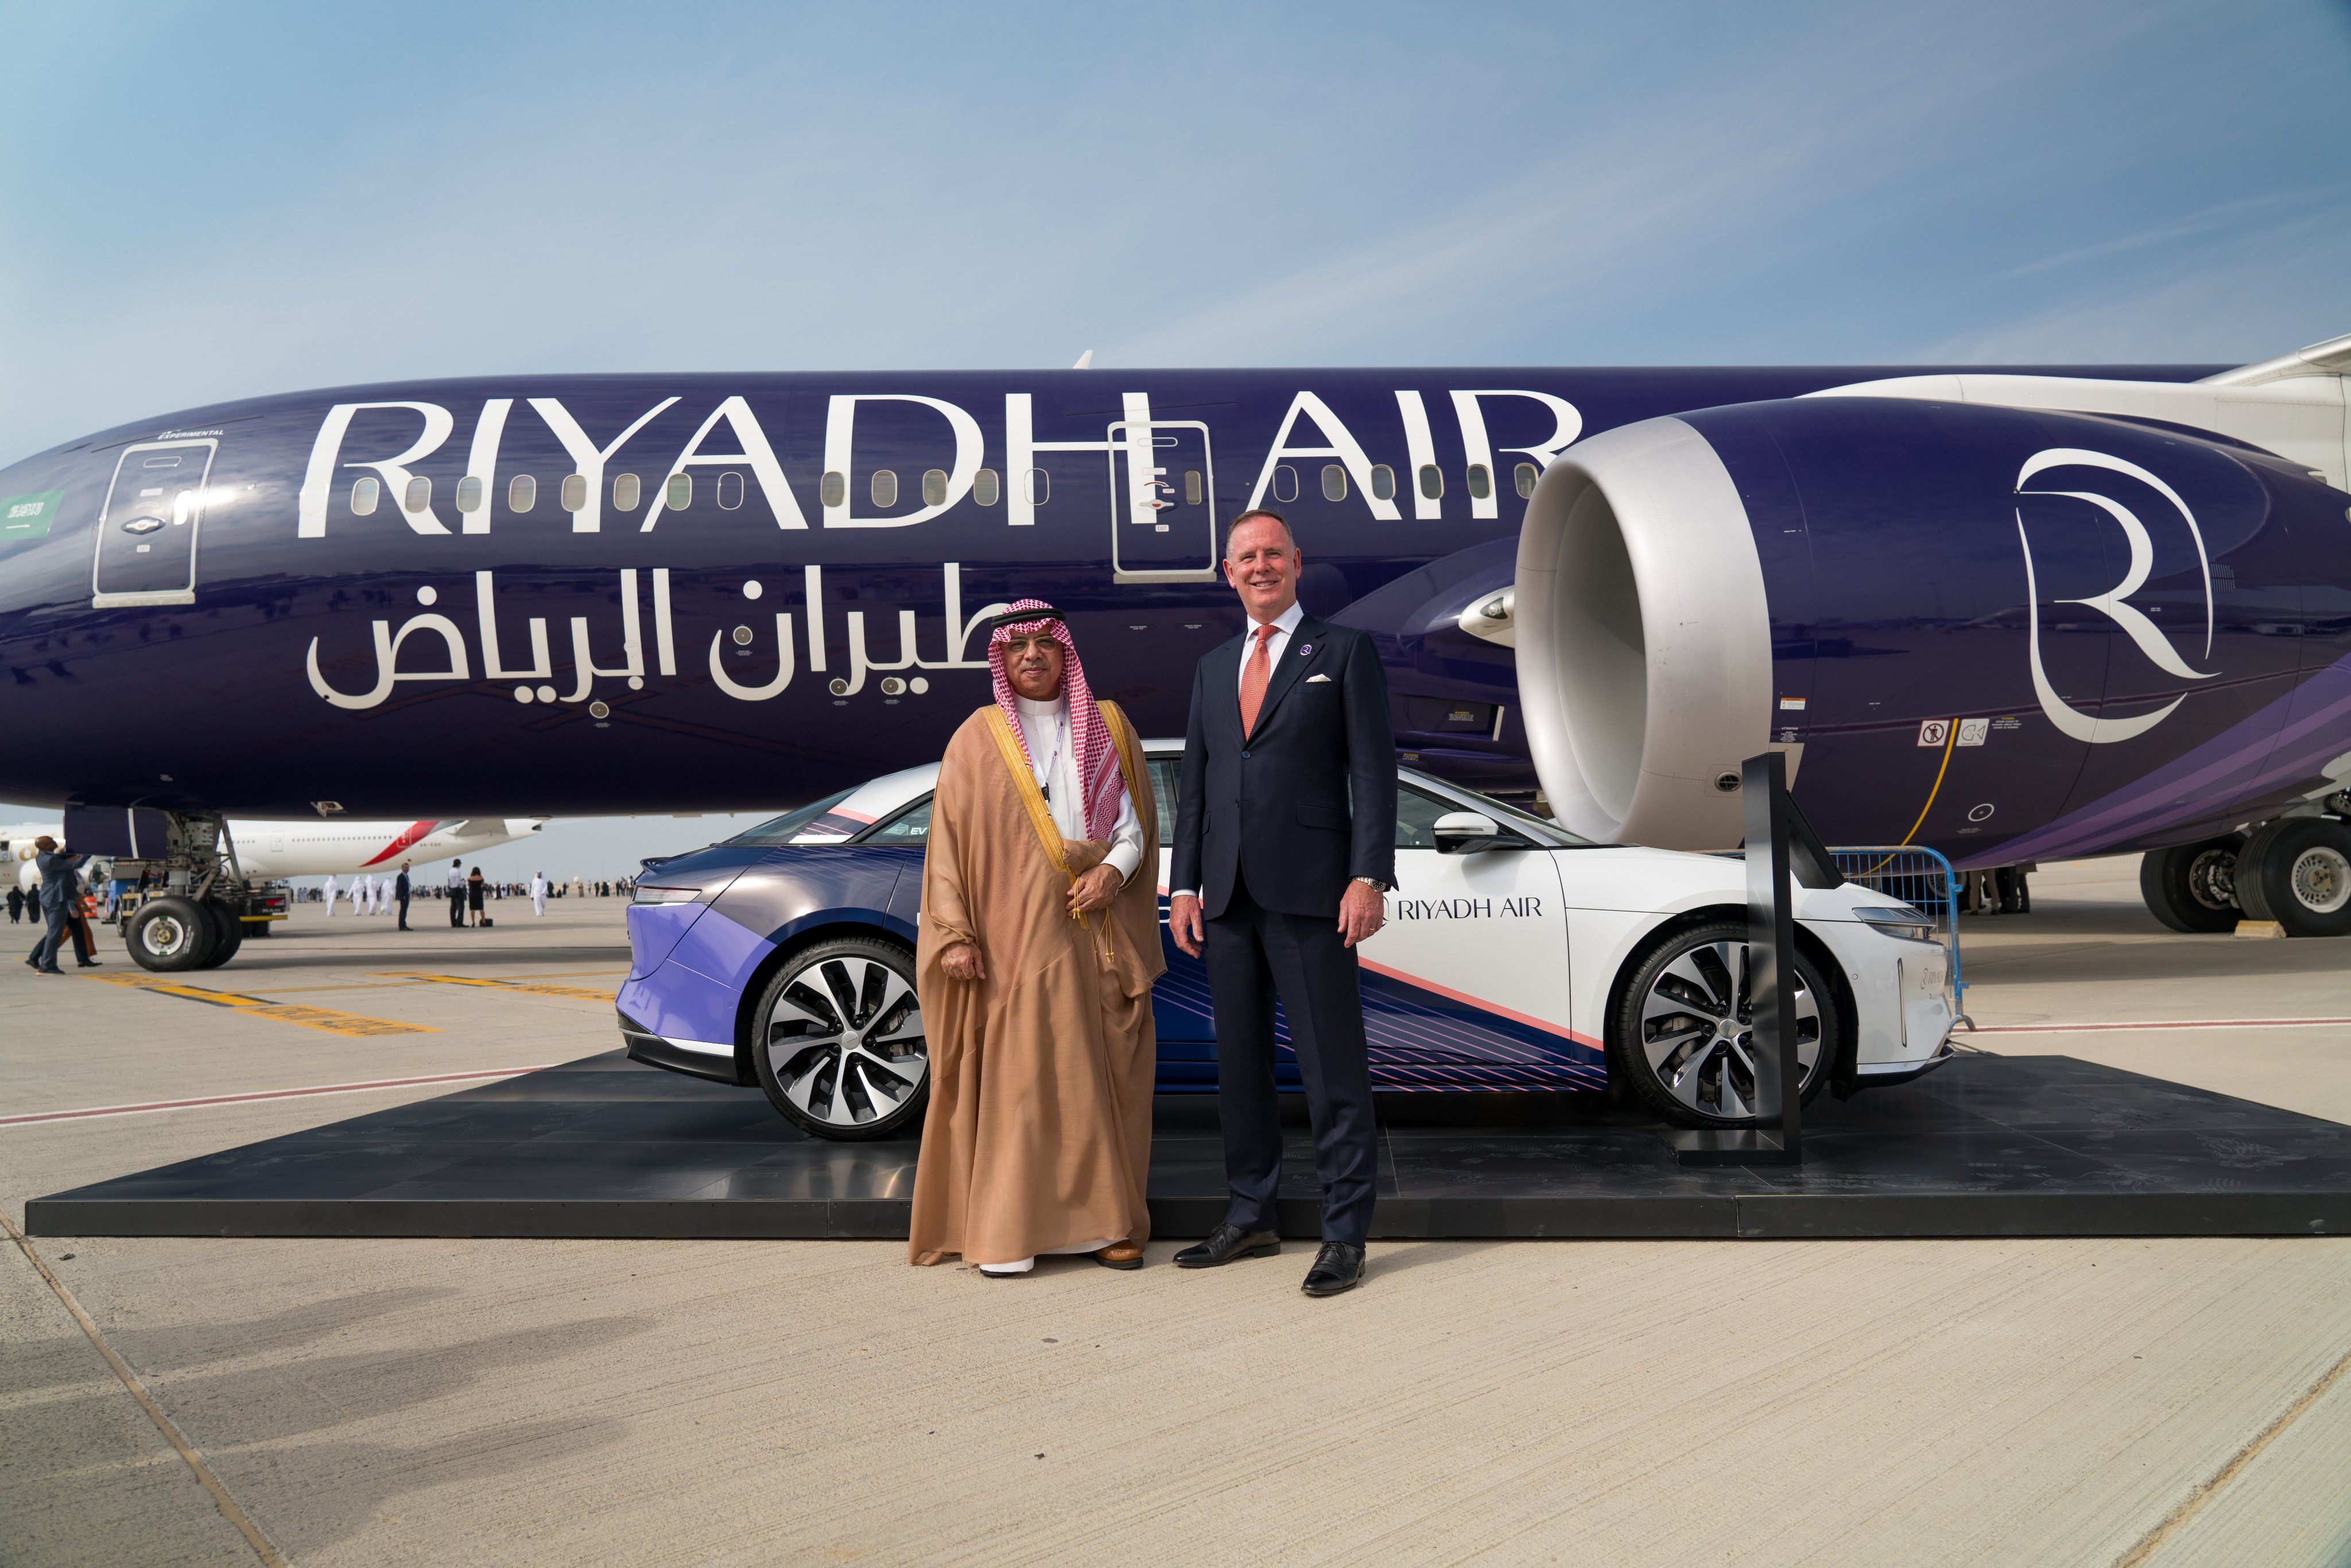 Riyadh Air Boeing 787 and Tony Douglas